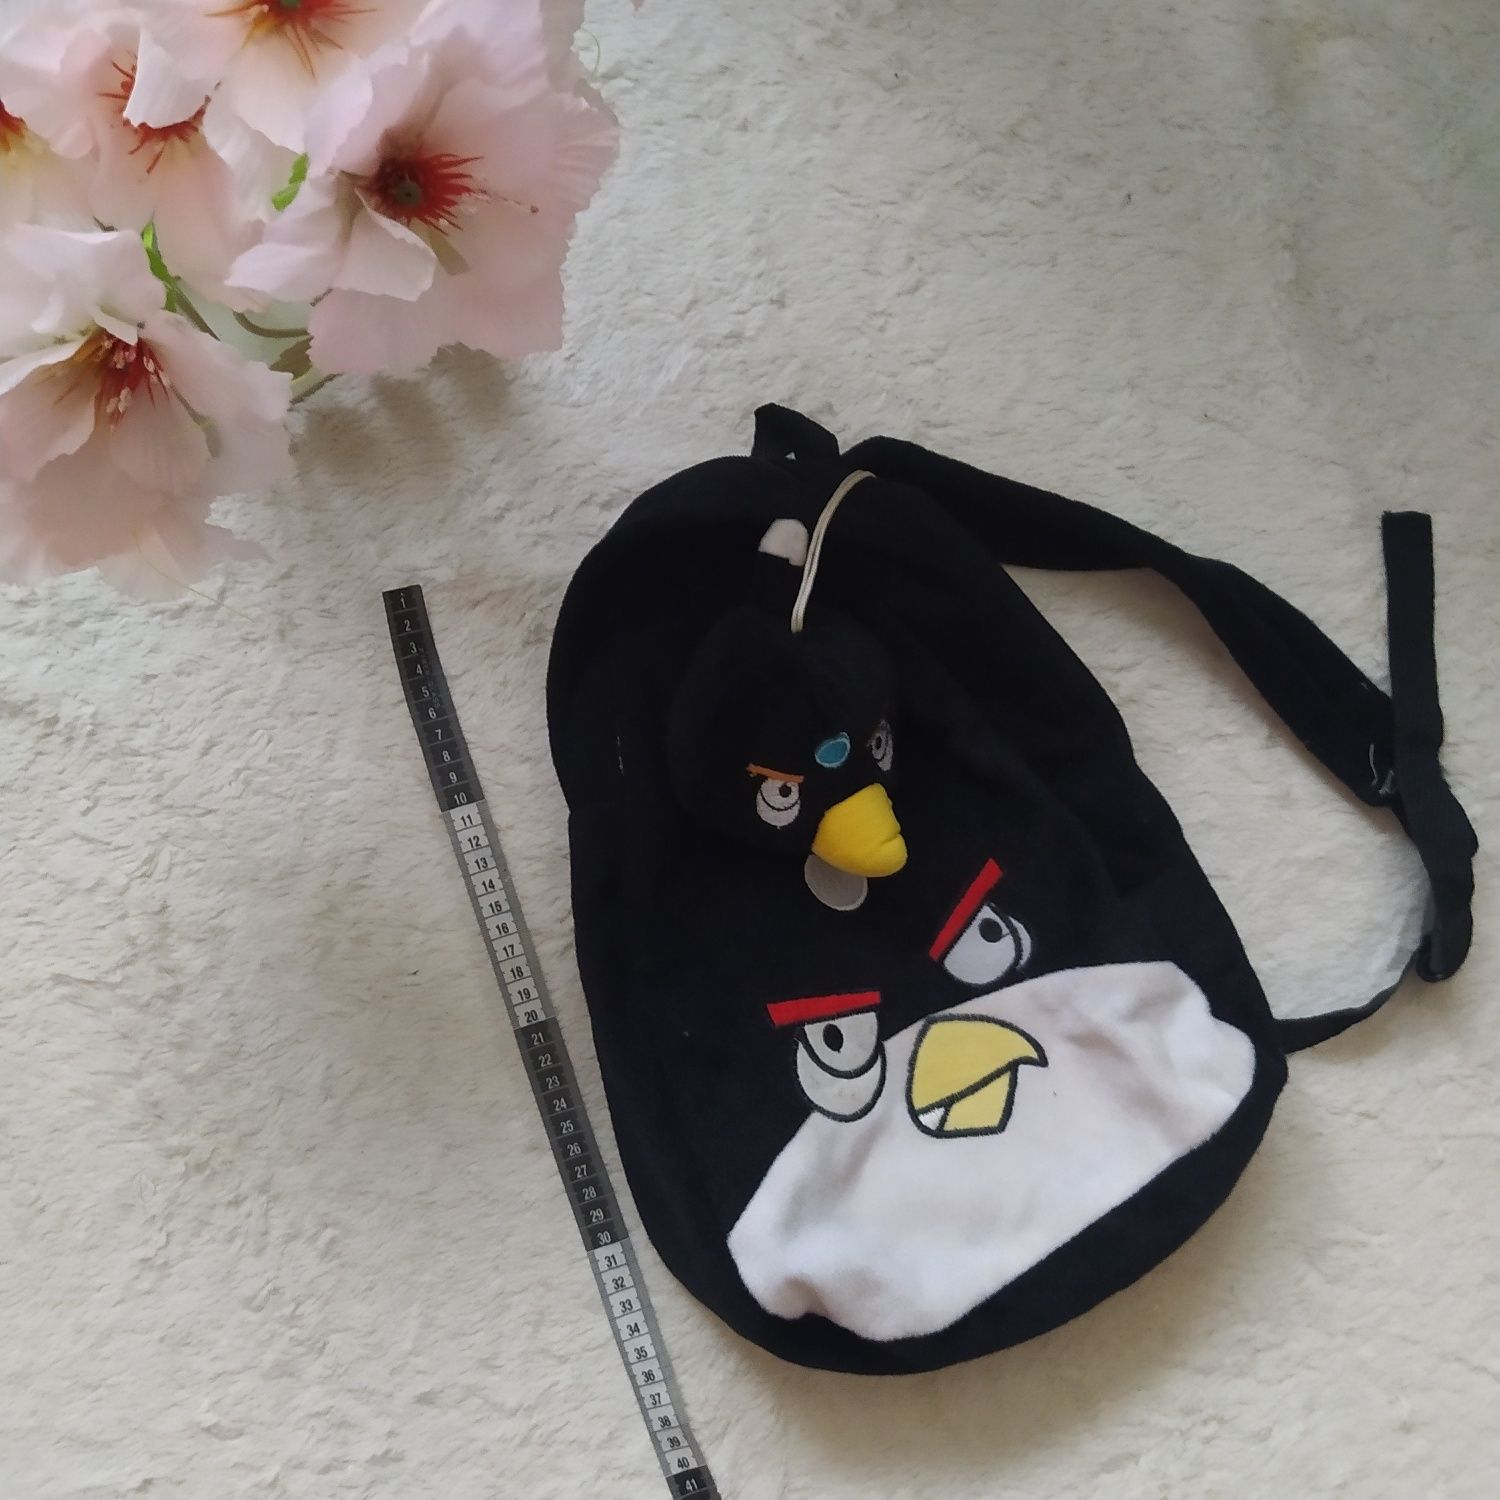 Pluszowy plecak Angry Birds czarna Bomba zimowy miękki dla chłopca